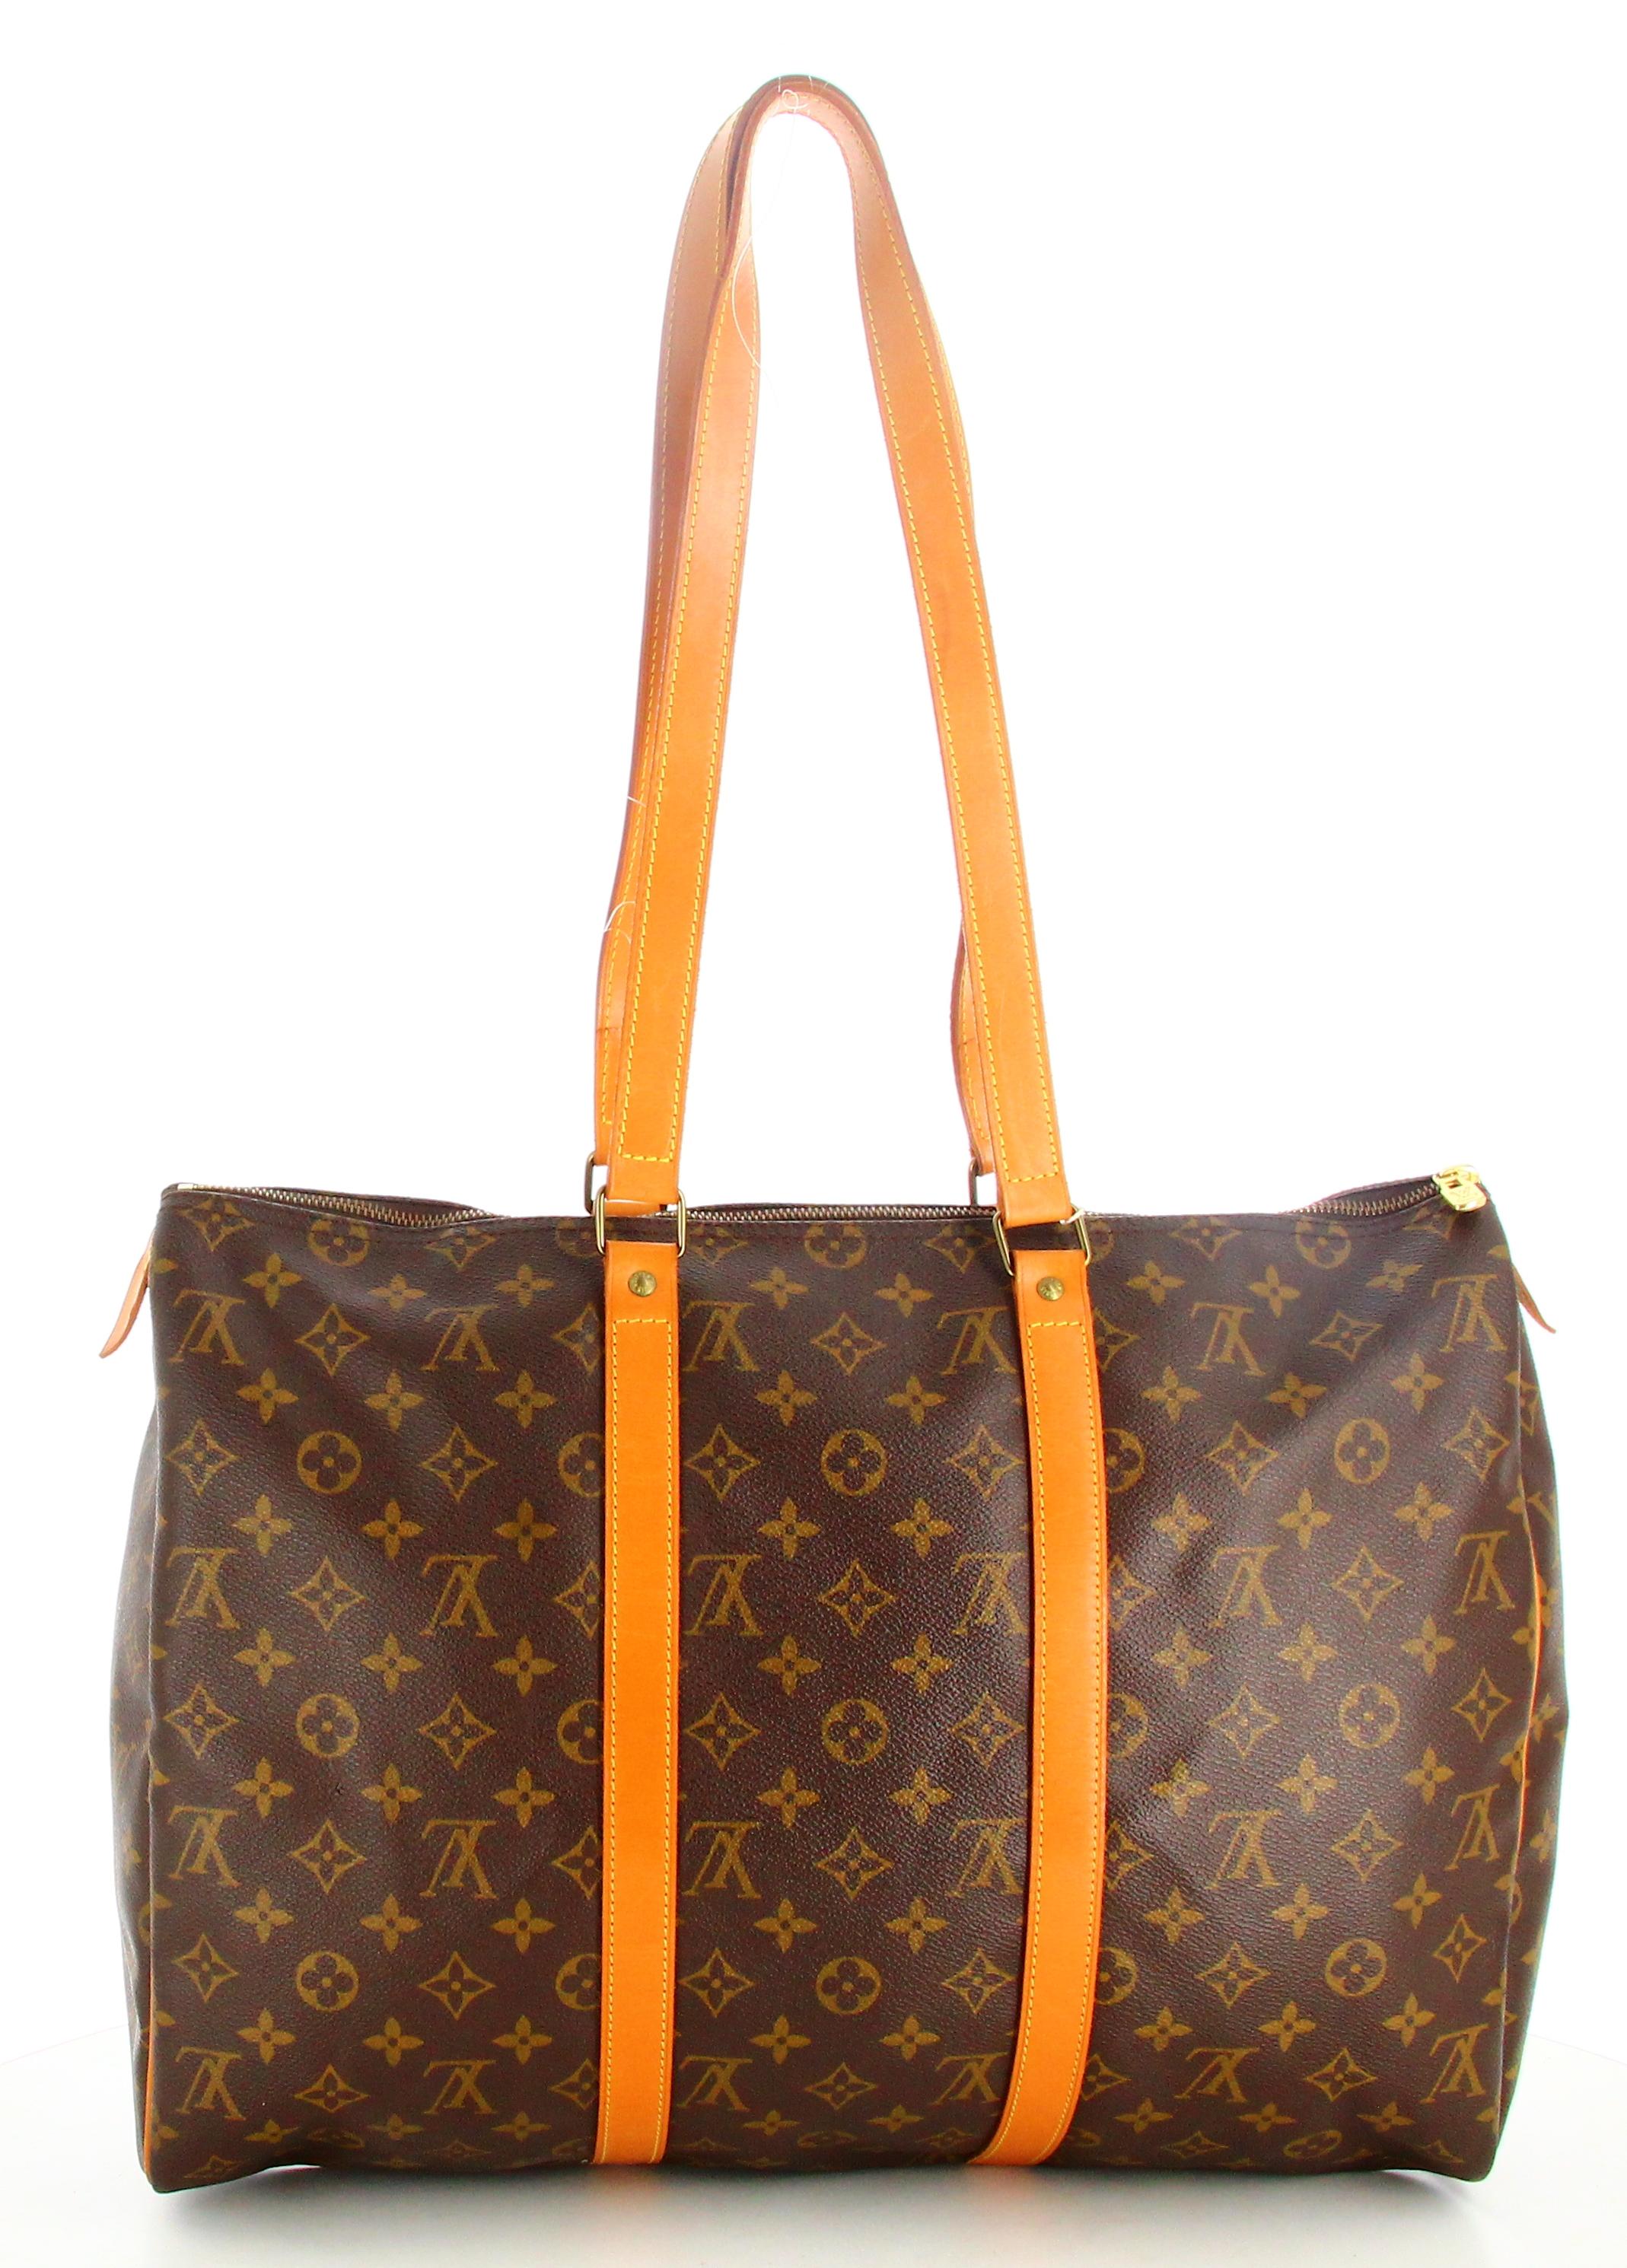 1992 Louis Vuitton Monogram Travel Bag Flannel Bag 45 For Sale 2